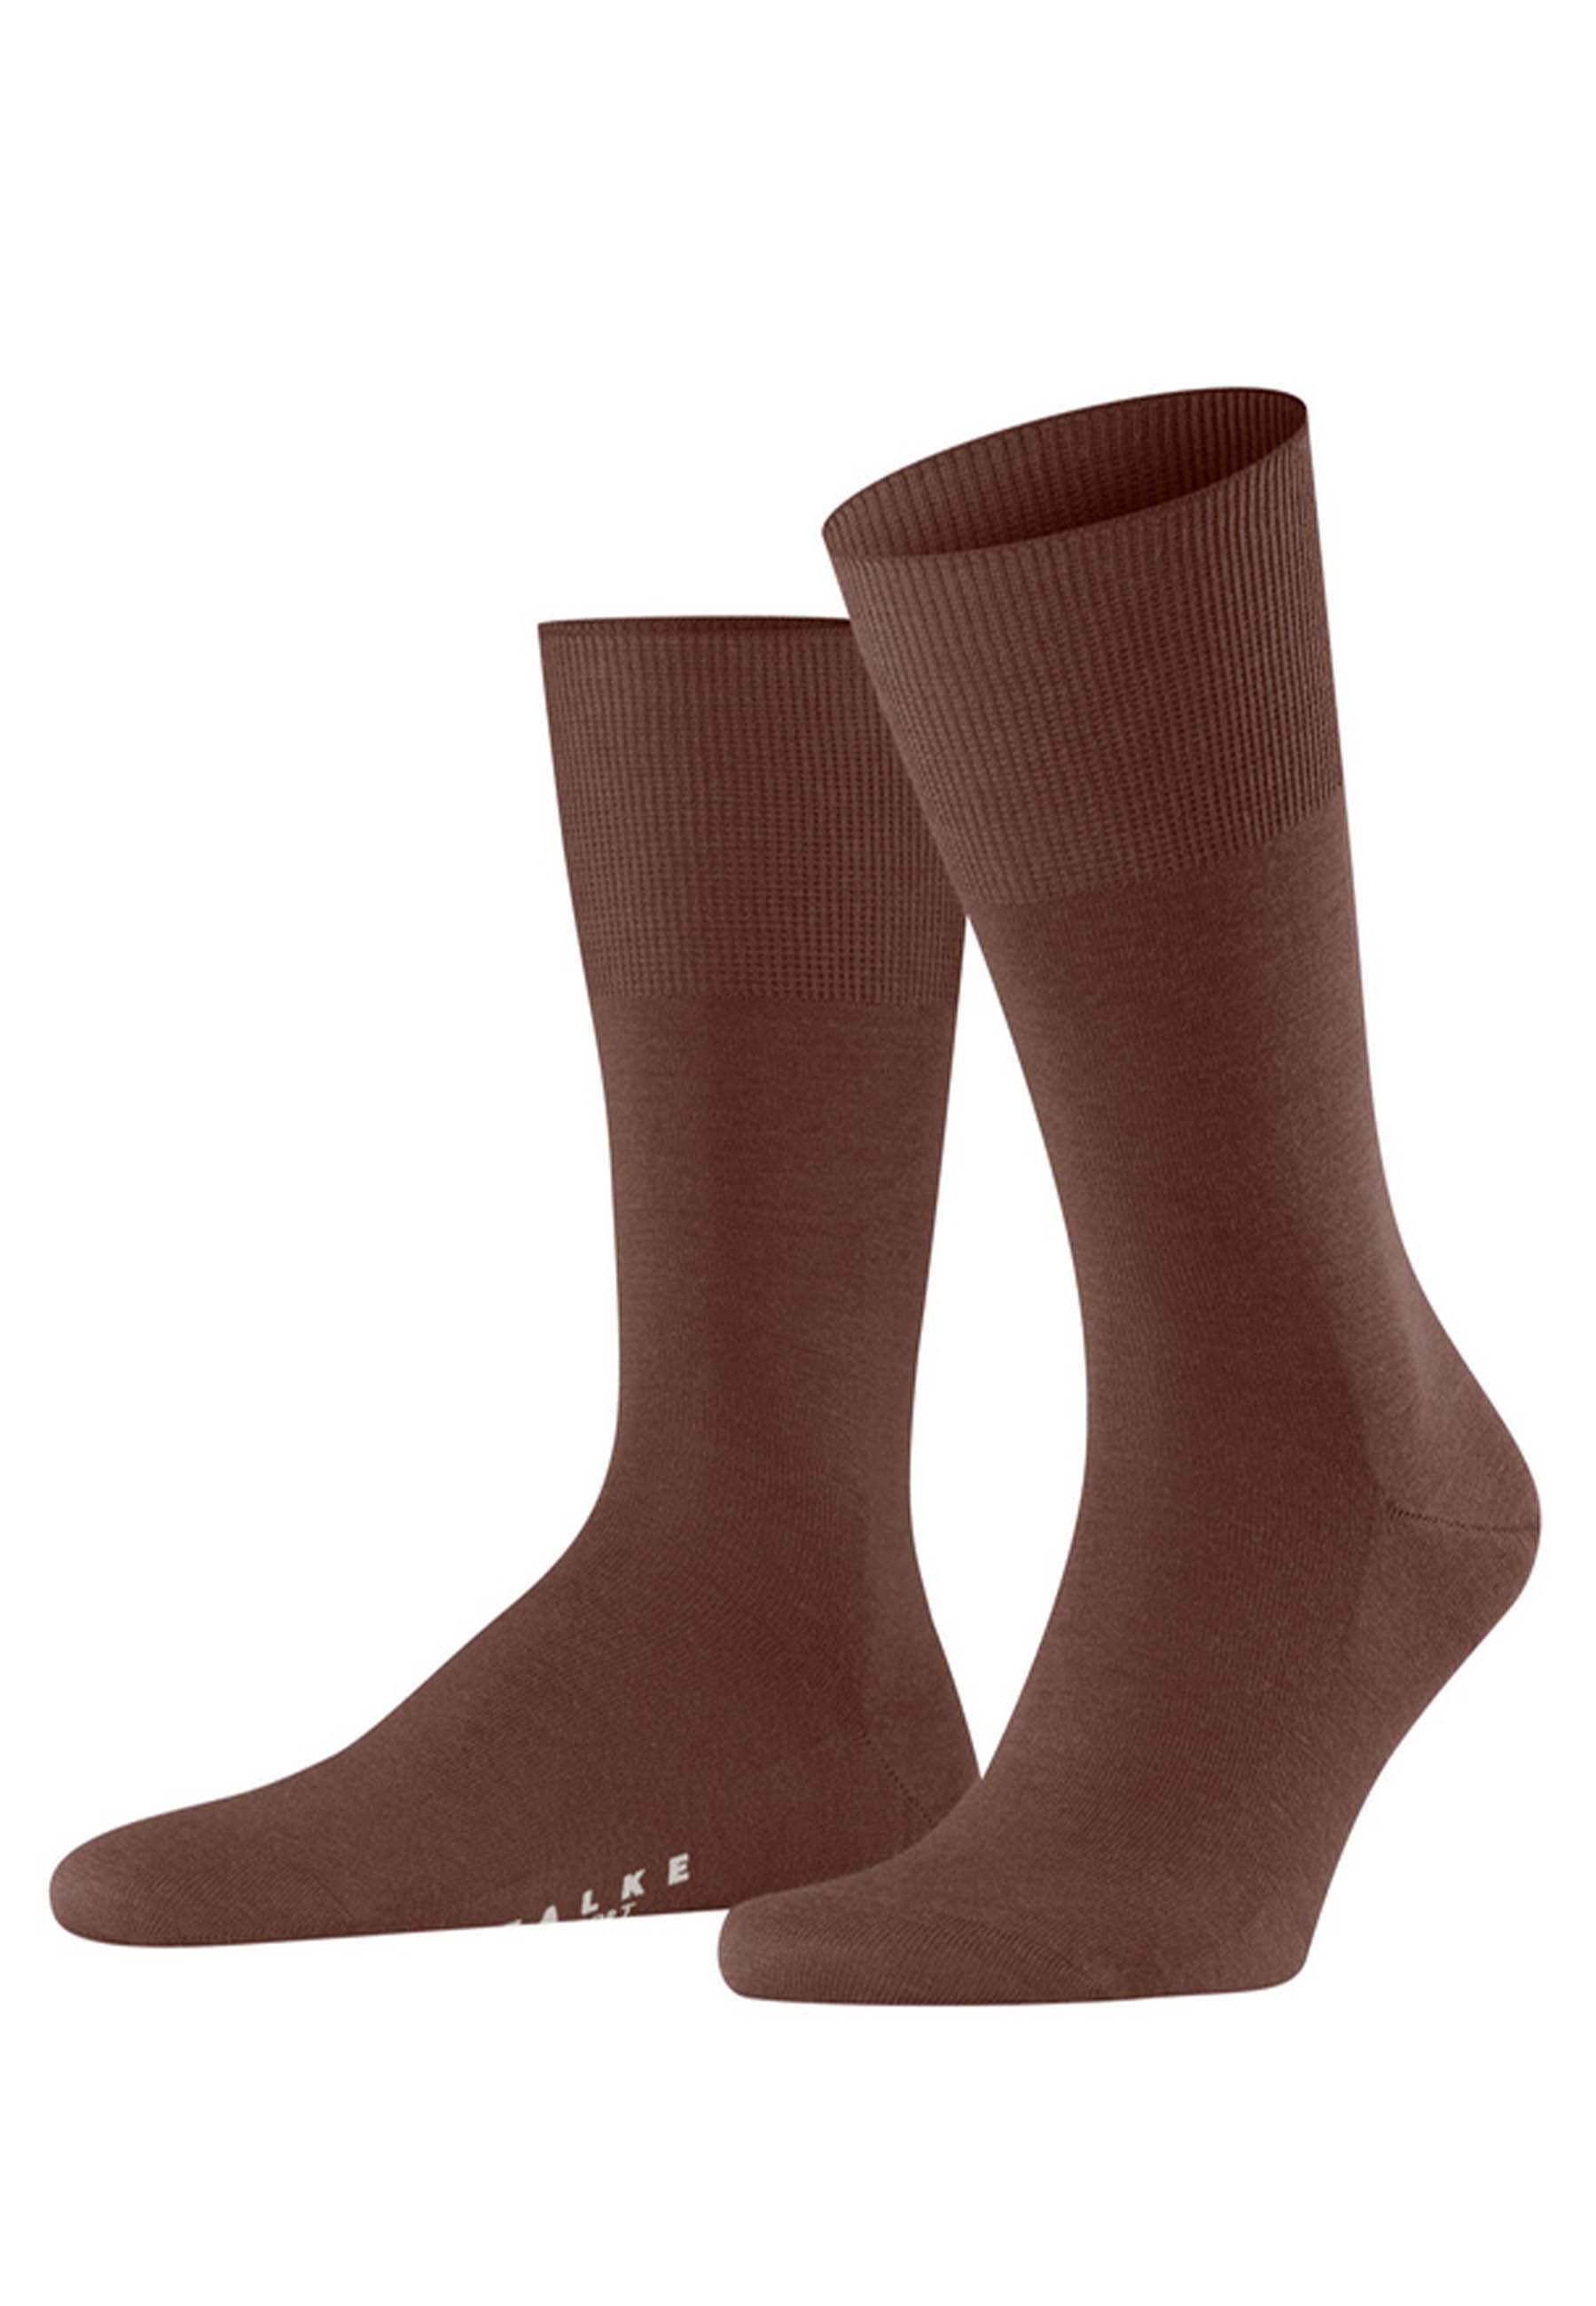 FALKE Sokken Bruin maat 41-42 hoge sokken bruin